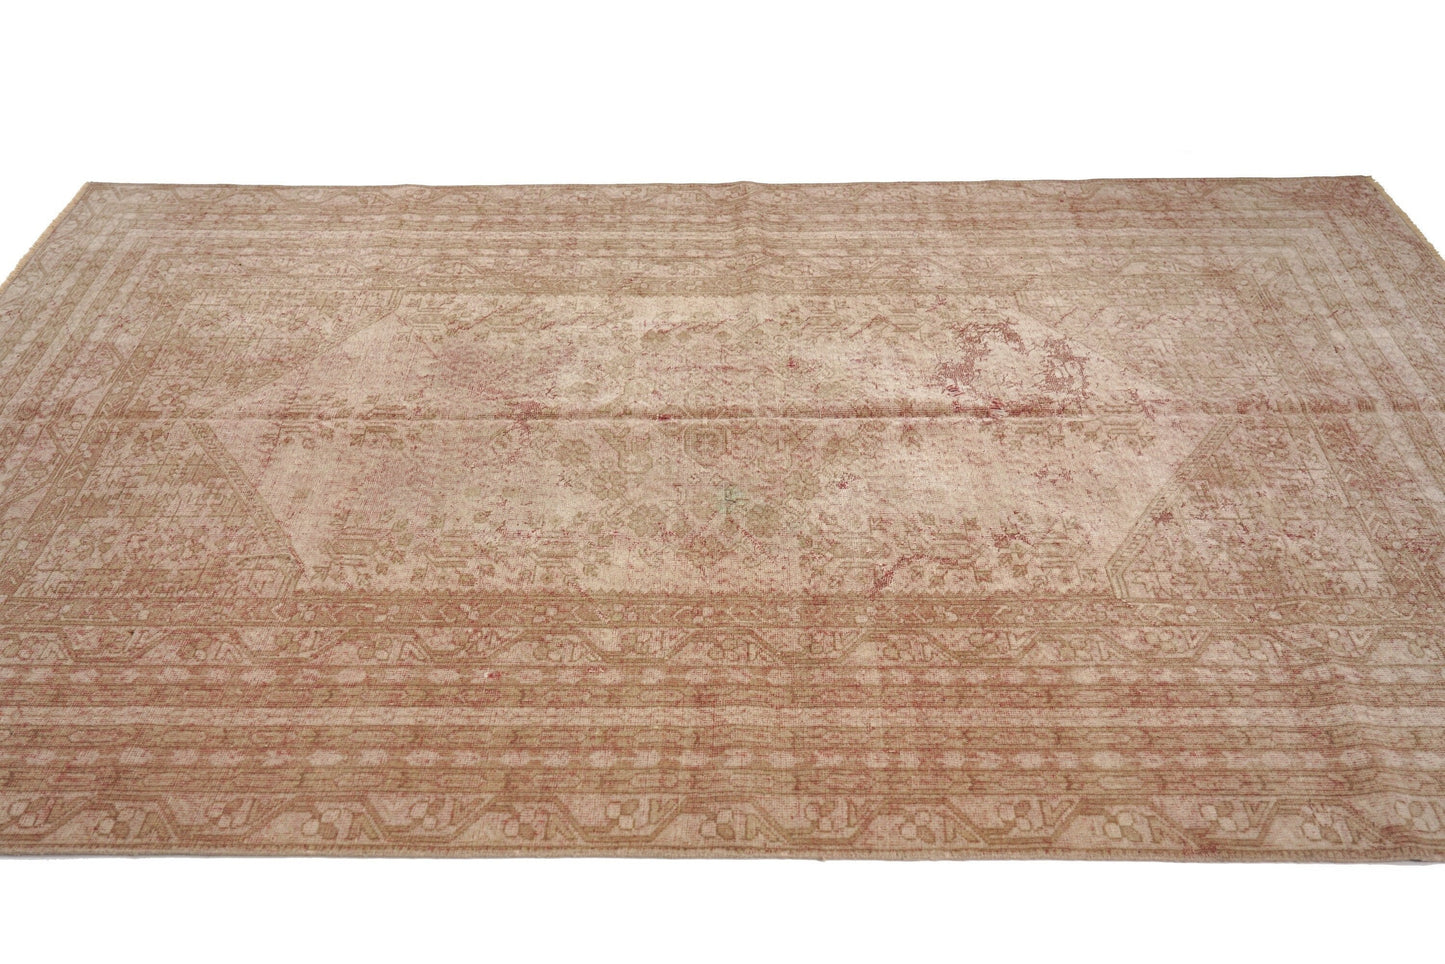 5x8 Antique Oushak Rug, Distressed Turkish rug, Handmade Carpet rug, Old rug, Oushak Carpet, One of a kind rug, Living room rug, 3169